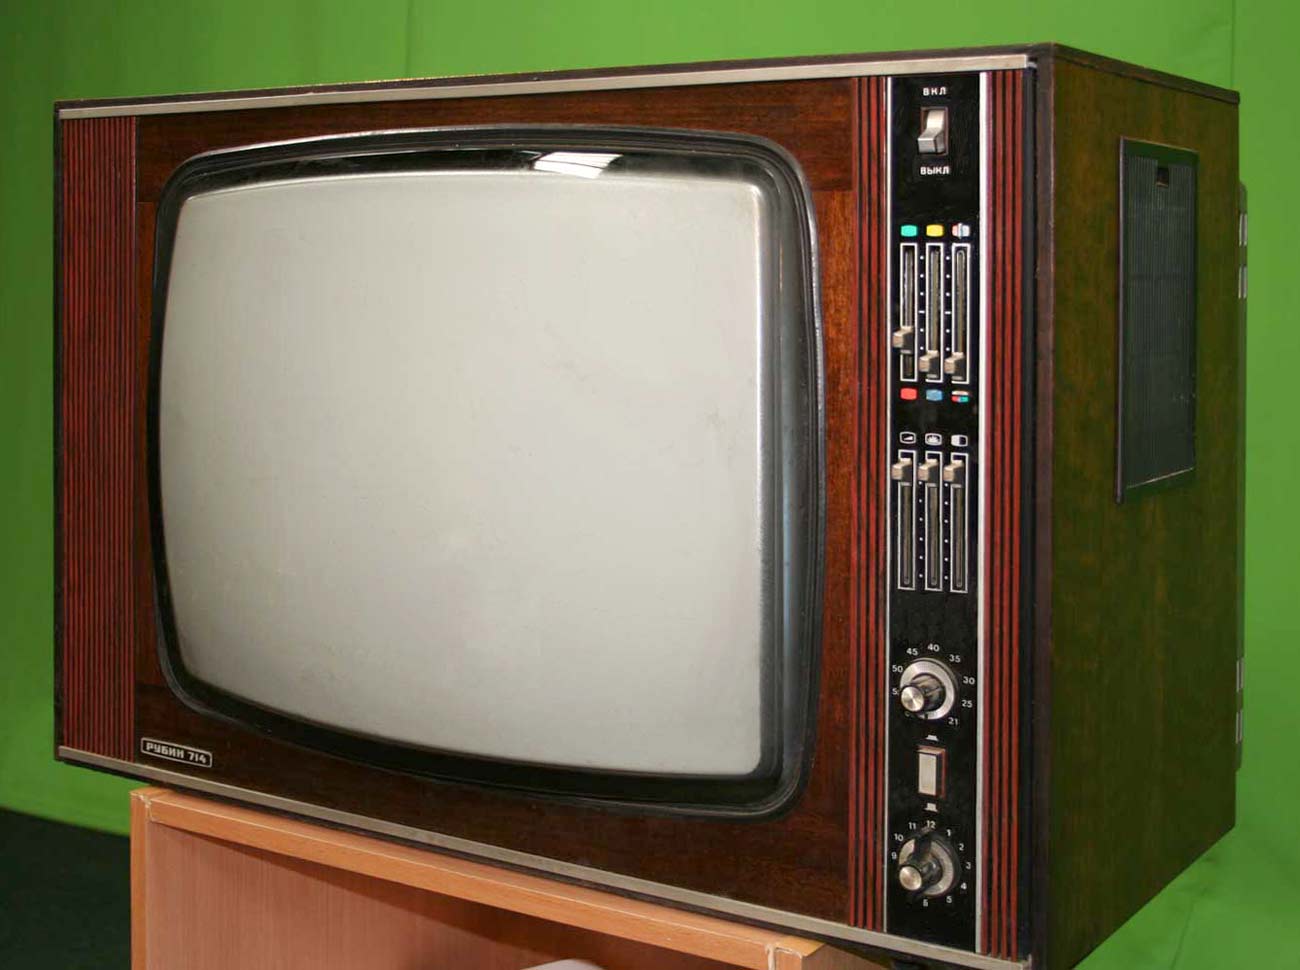 Телевизор в ссср появился каком году. Телевизор Рубин 714. Телевизор Рубин СССР 714. Цветной телевизор Рубин 714. Ламповый телевизор Рубин 714.